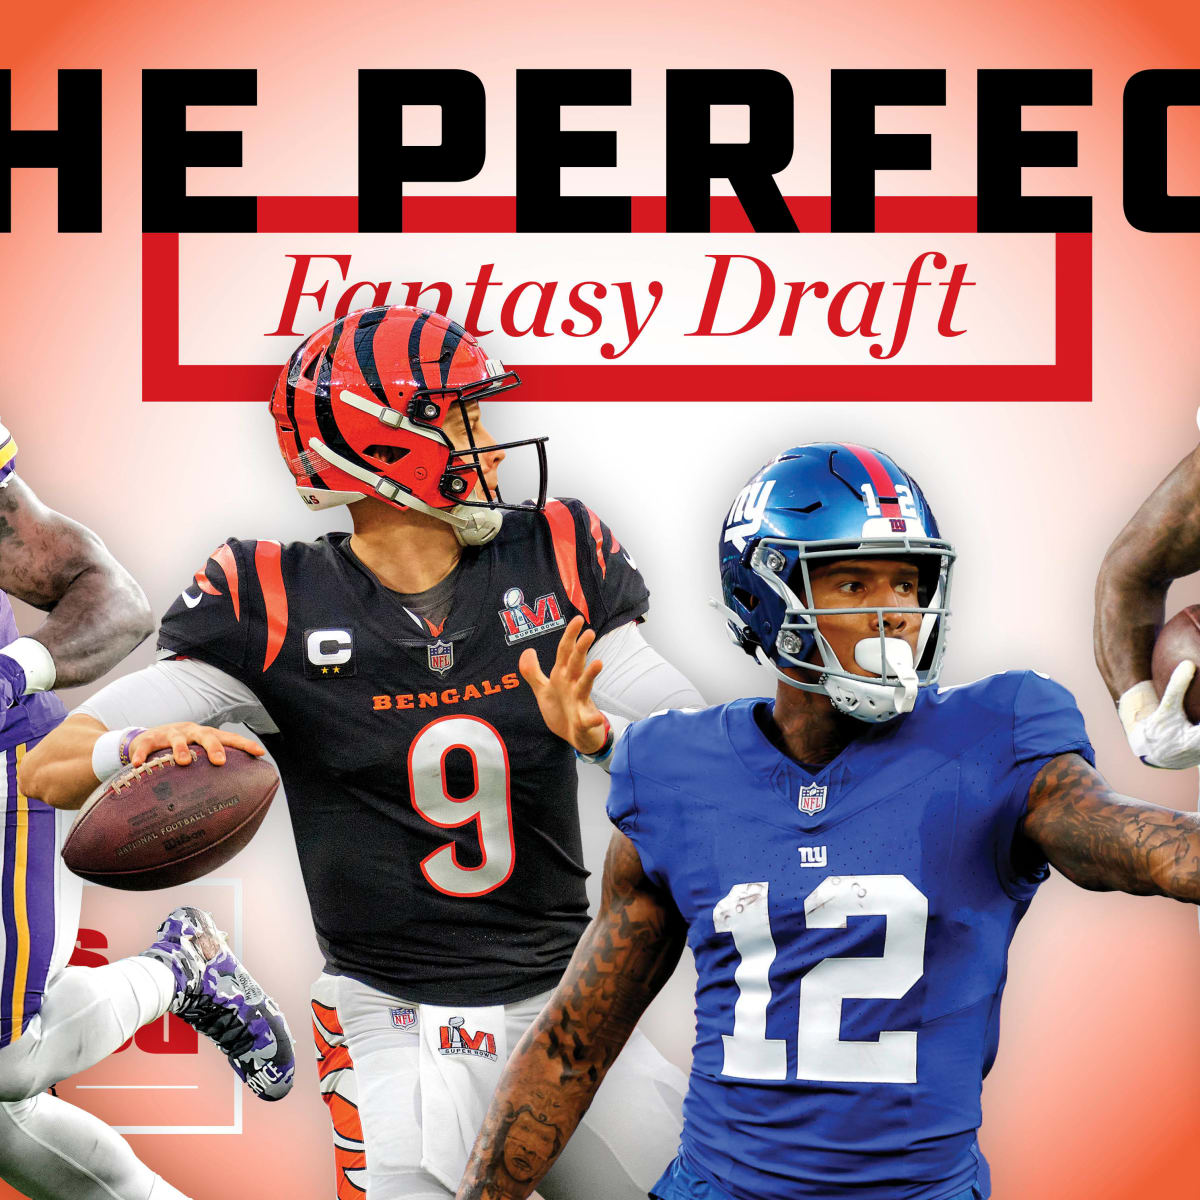 best picks for nfl fantasy draft